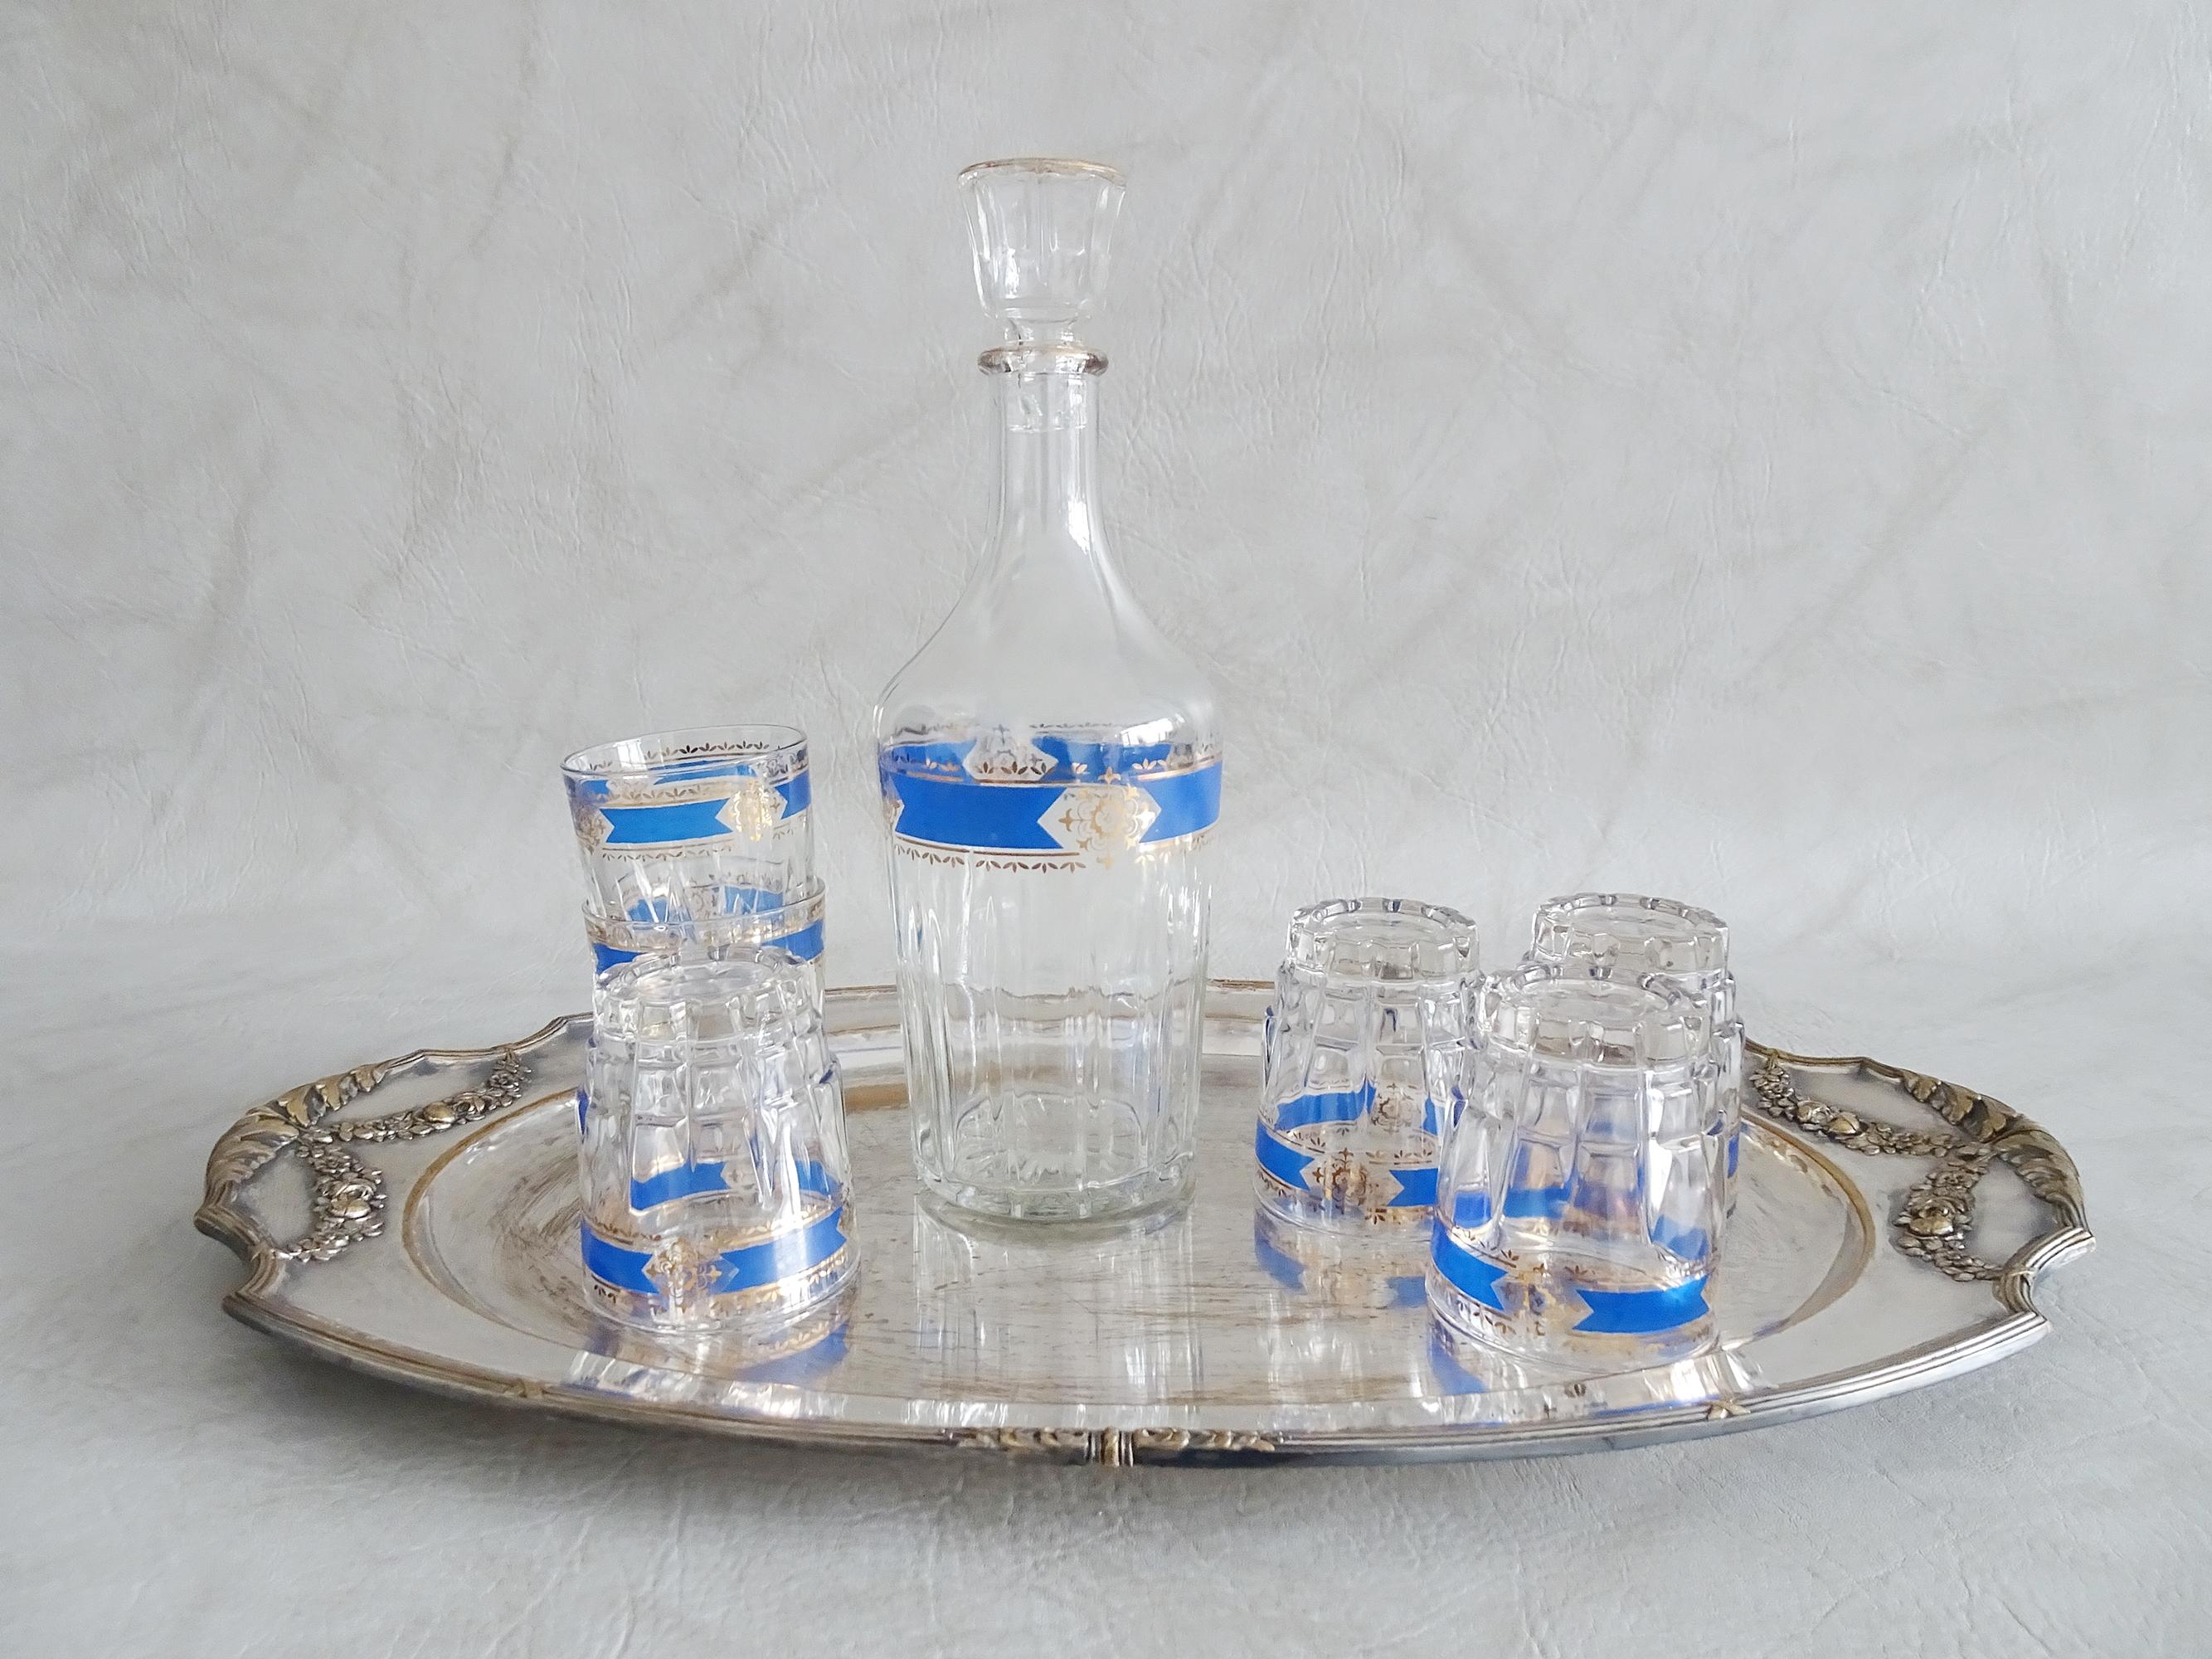 Stilvolles Bar-Set bestehend aus einer Karaffe mit sechs Gläsern und einem Tablett. Italienisches Glas von Cristallerie Artistiche DEP in einem edlen blau-goldenen Dekor und einem versilberten Tablett mit goldenen floralen Ornamenten.

Ein